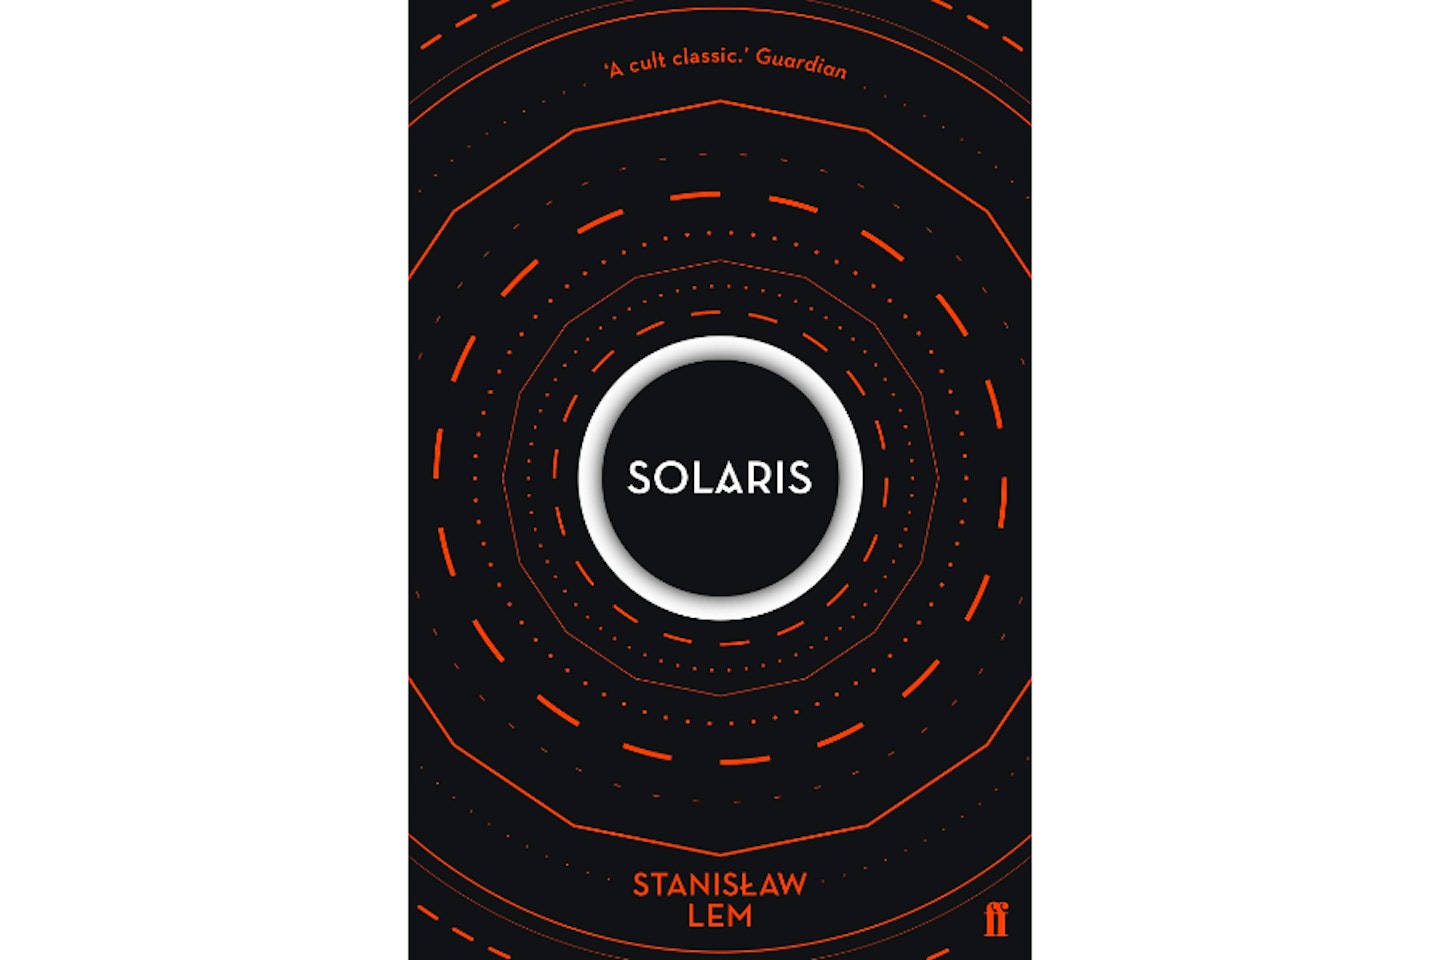 Solaris by Stanislaw Lem, 1961